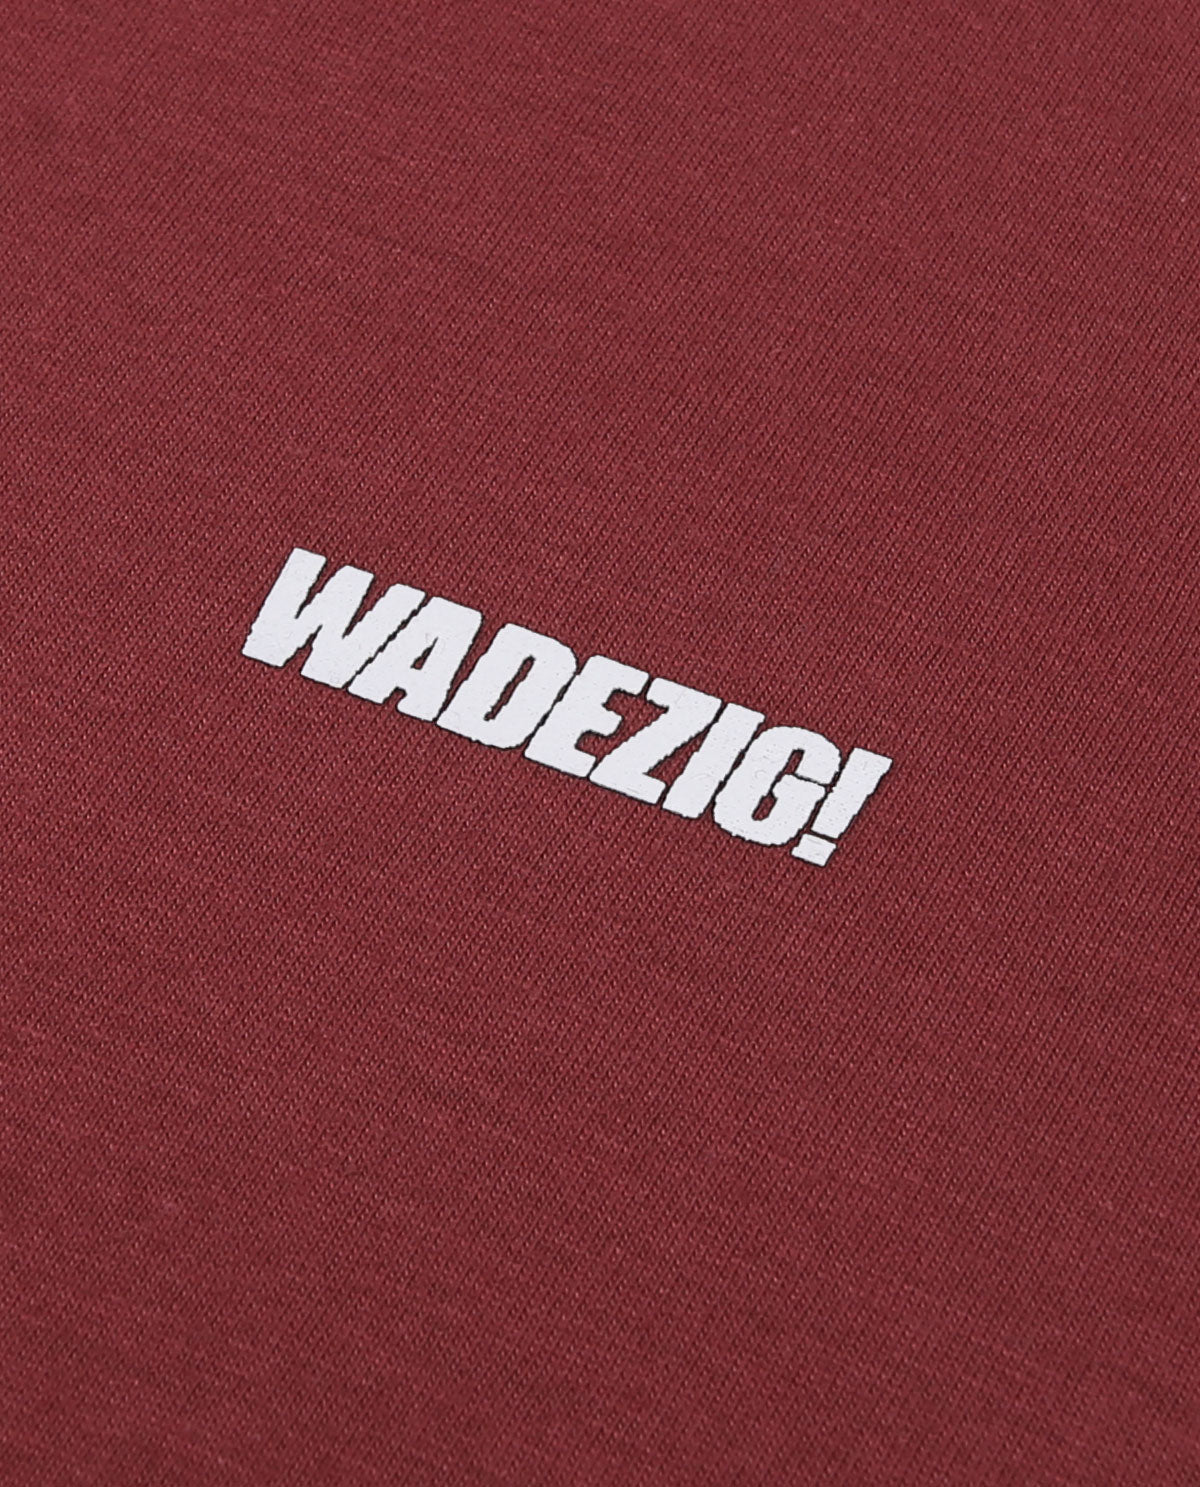 WADEZIG! T-SHIRT - BASIC RED PLUM